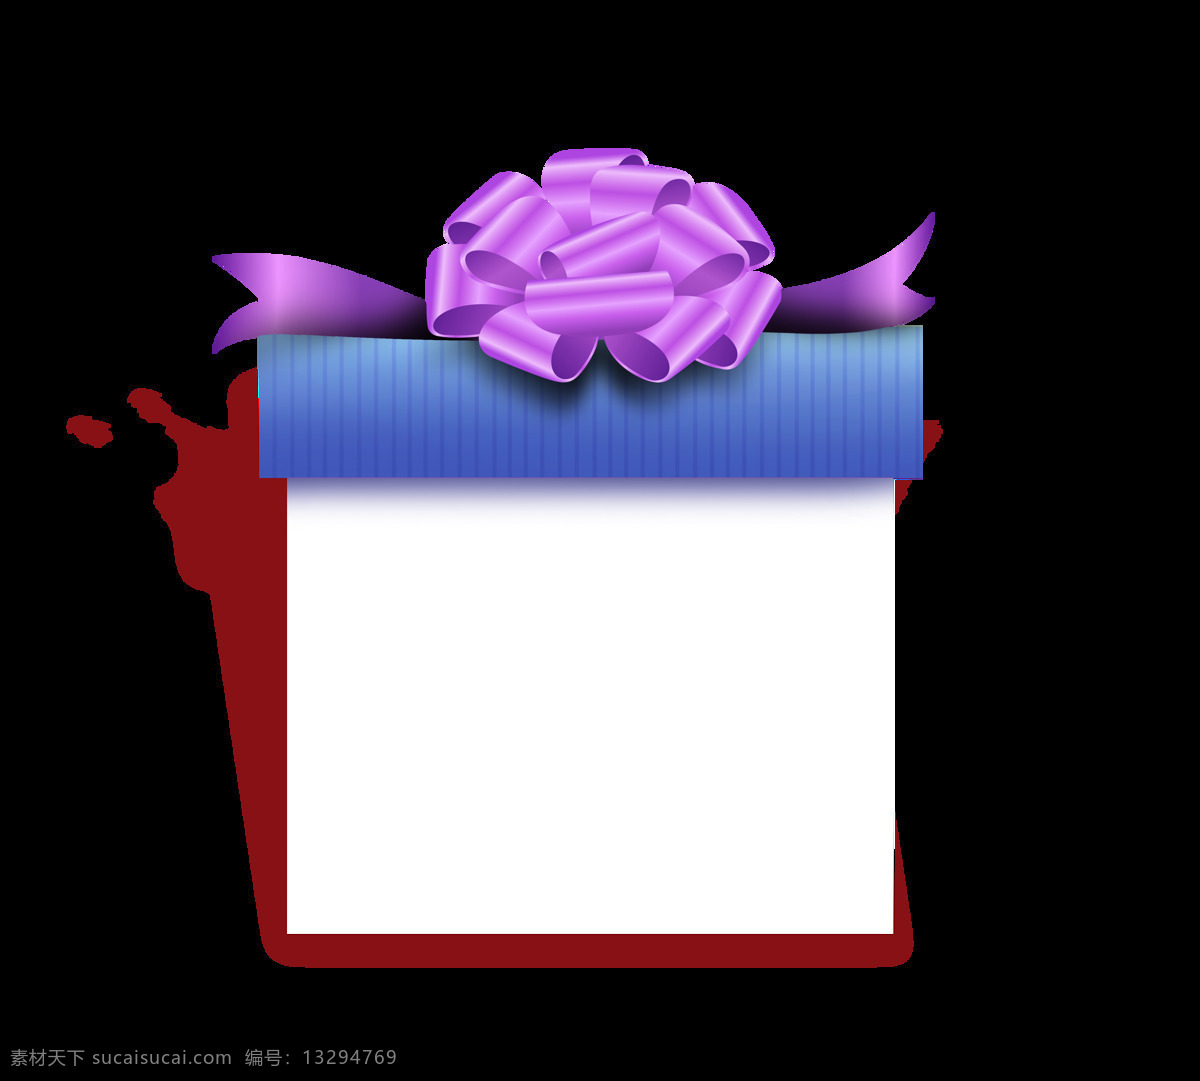 手绘 卡通 礼物 装饰 蝴蝶结 紫色 礼盒